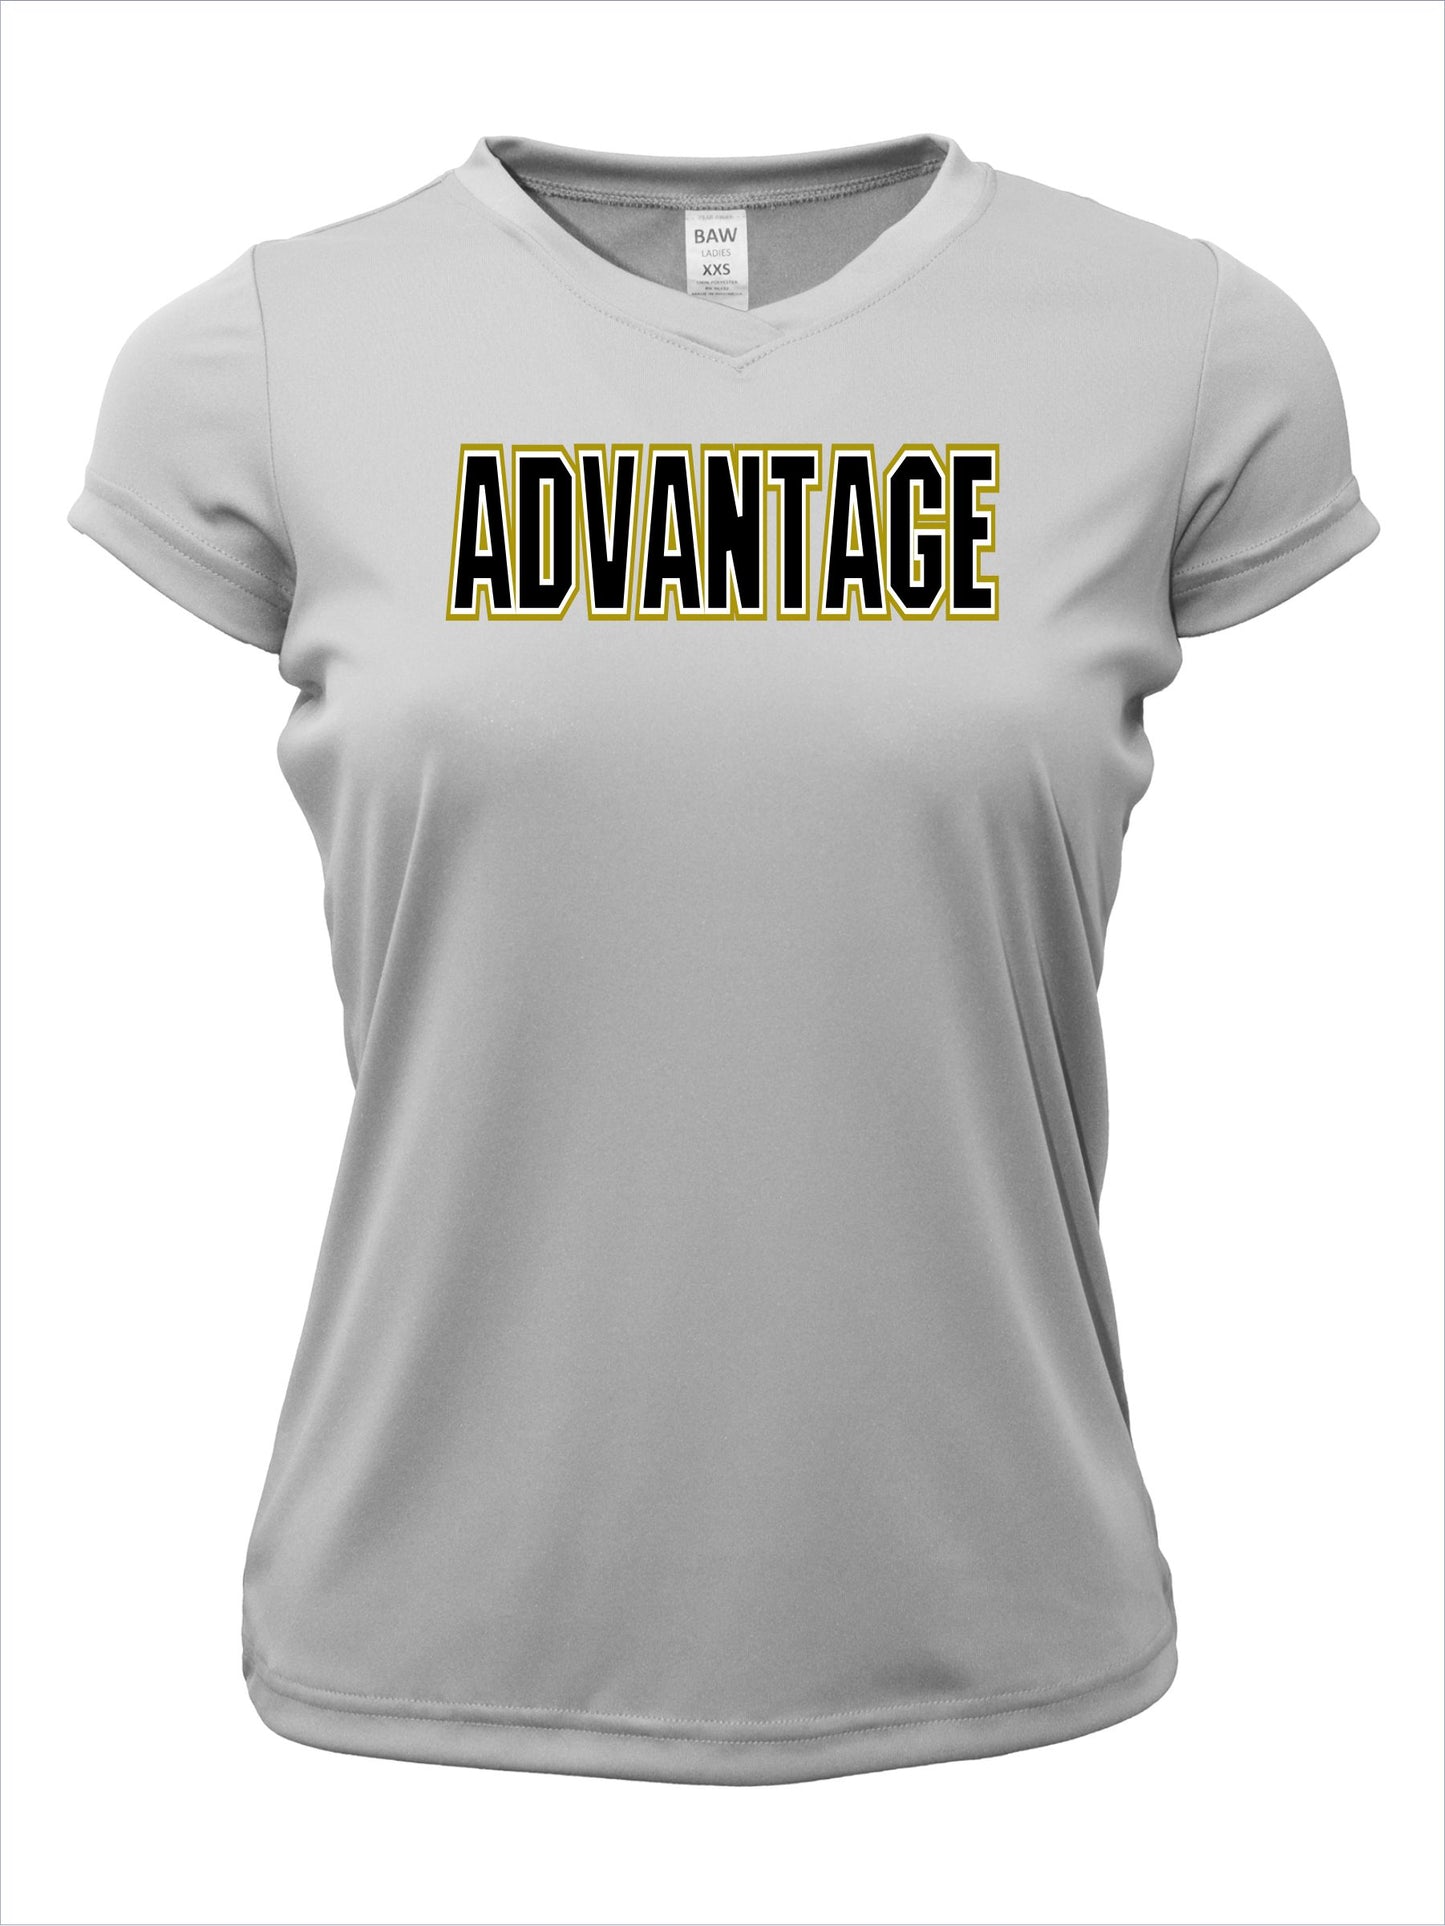 Ladies V-Neck "Advantage" Cotton T-Shirt